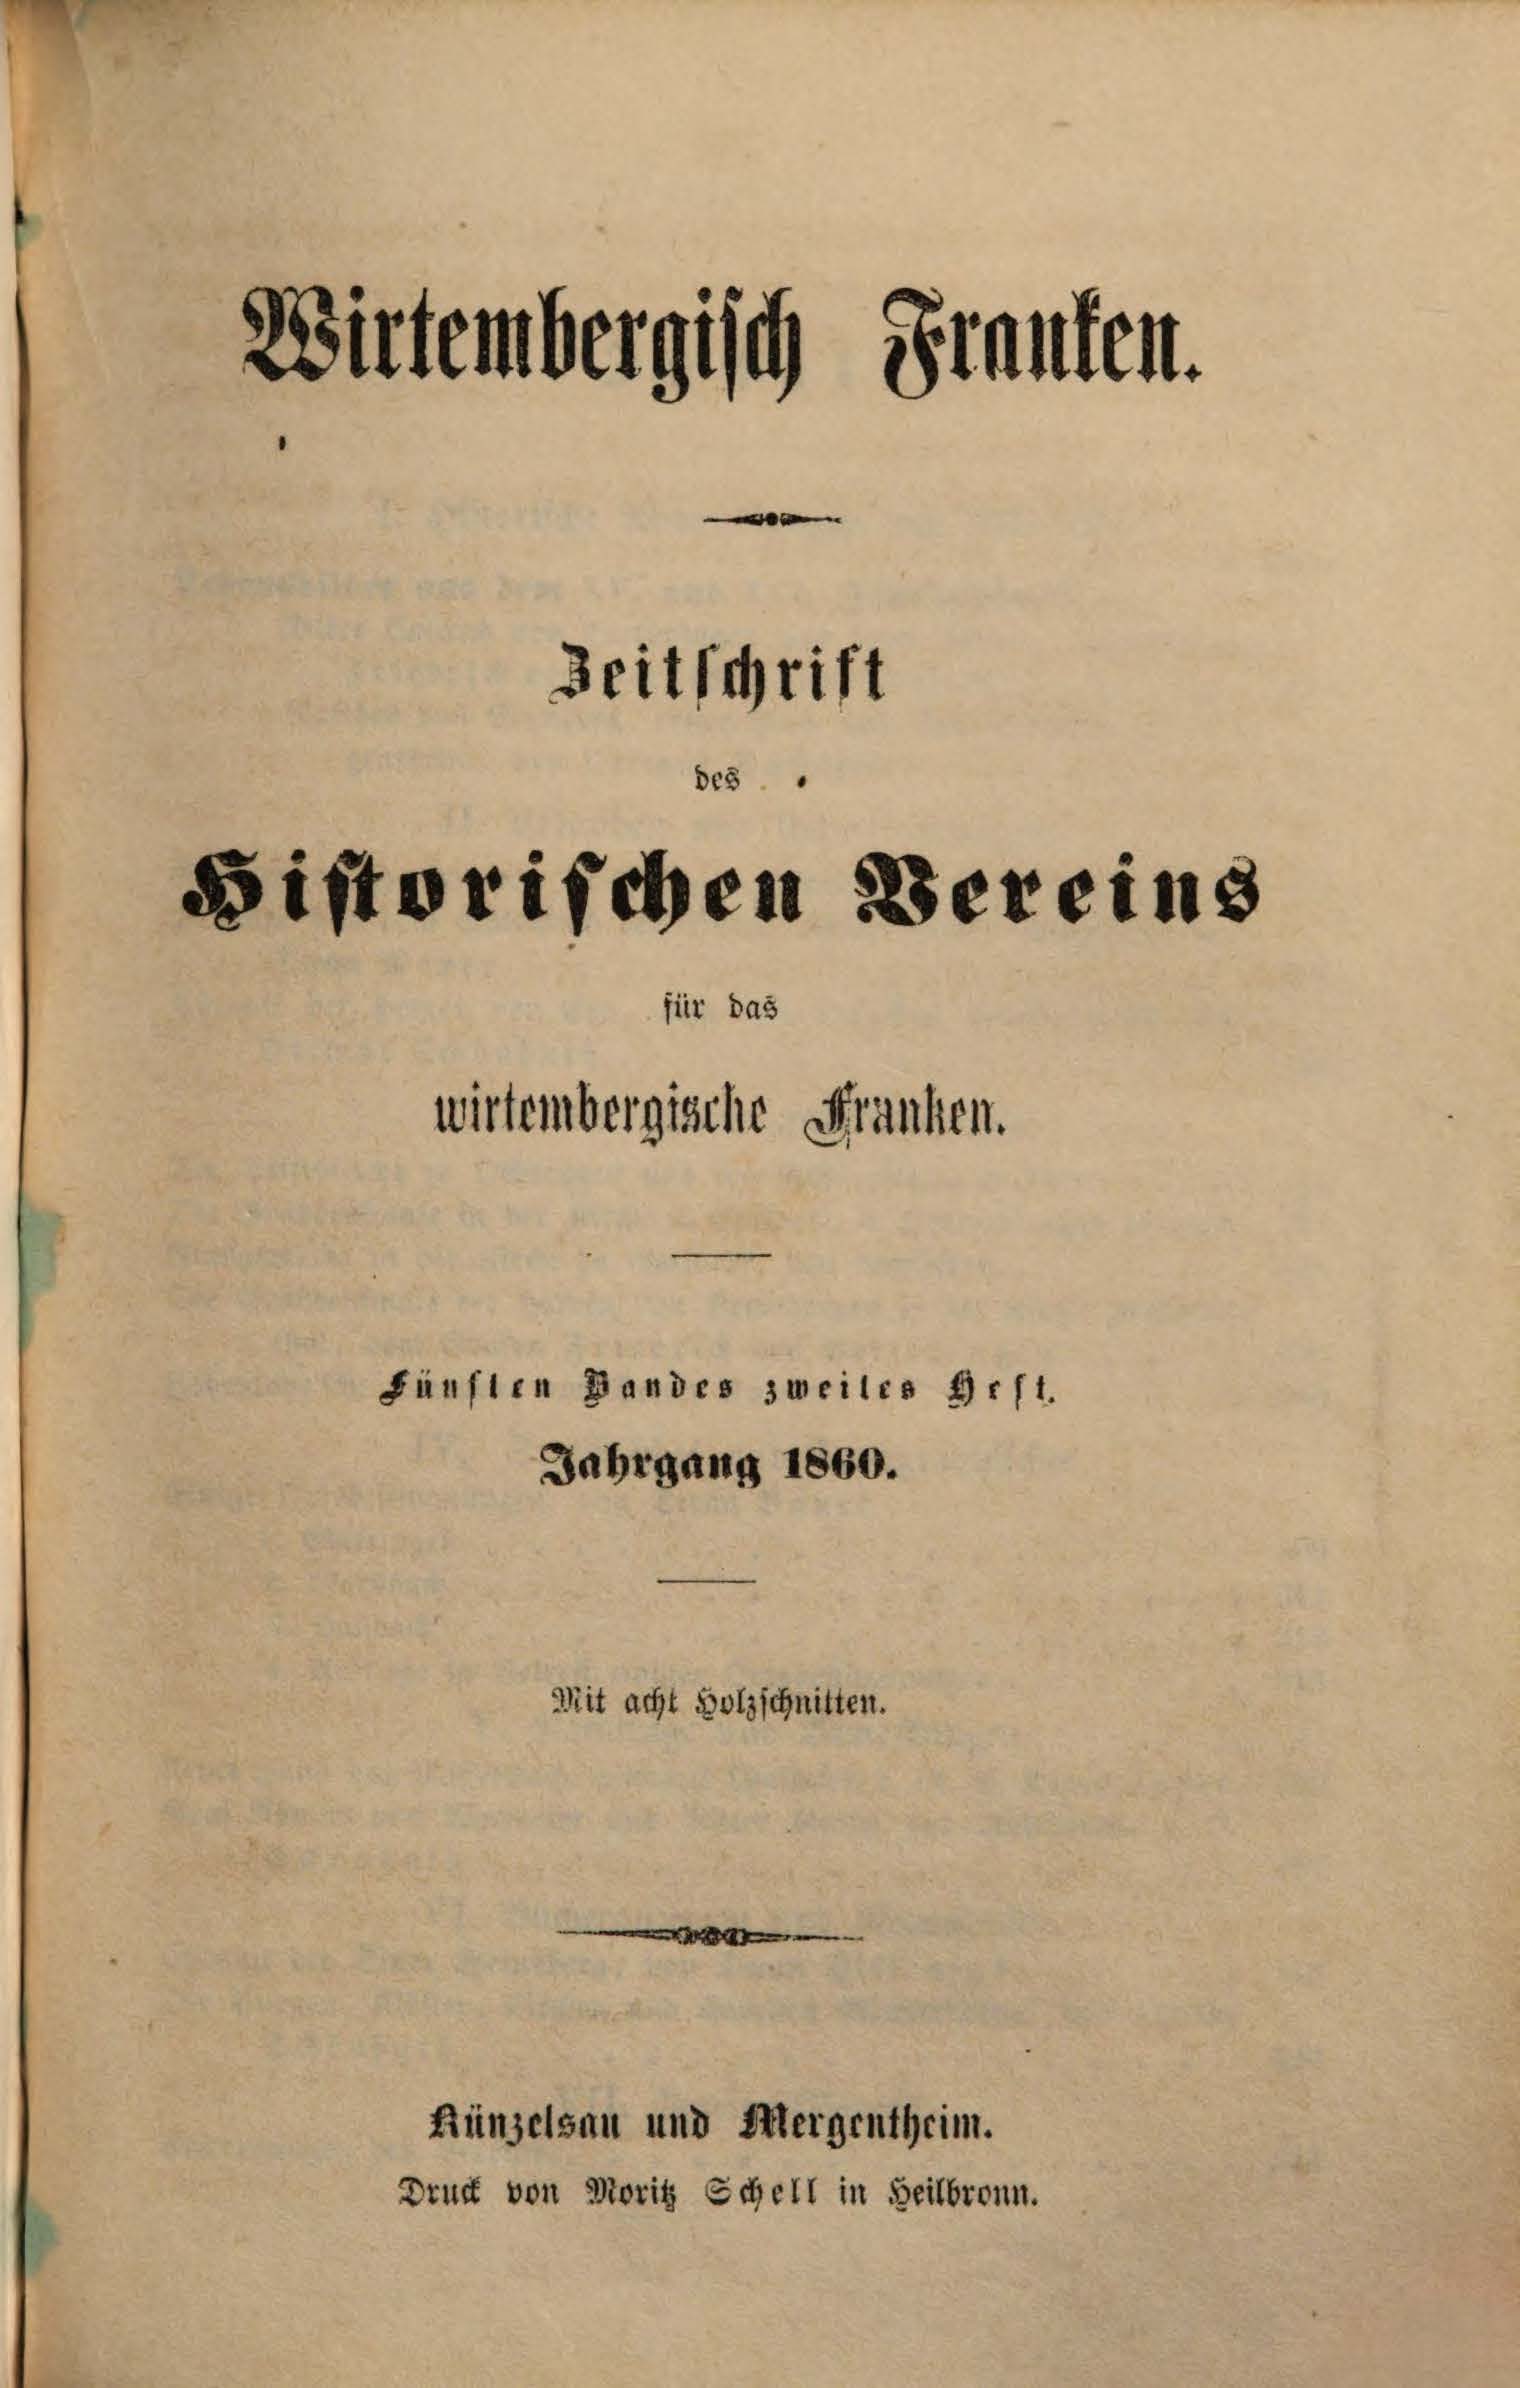                     Ansehen Bd. 5 Nr. 2 (1860): Zeitschrift des Historischen Vereins für das Württembergische Franken
                